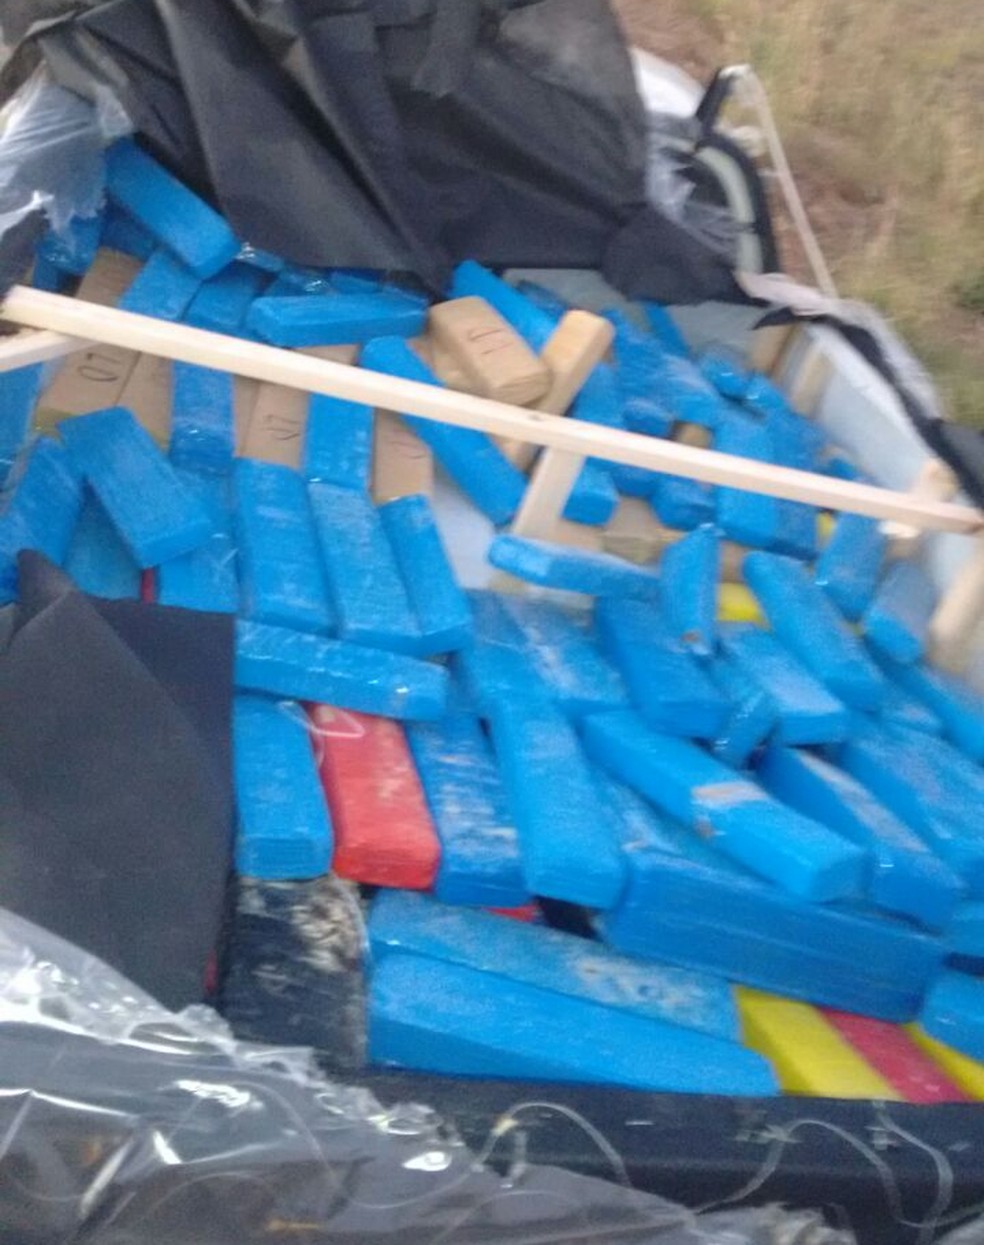 Drogas estavam em colchões em uma pick up (Foto: PRF/Divulgação)